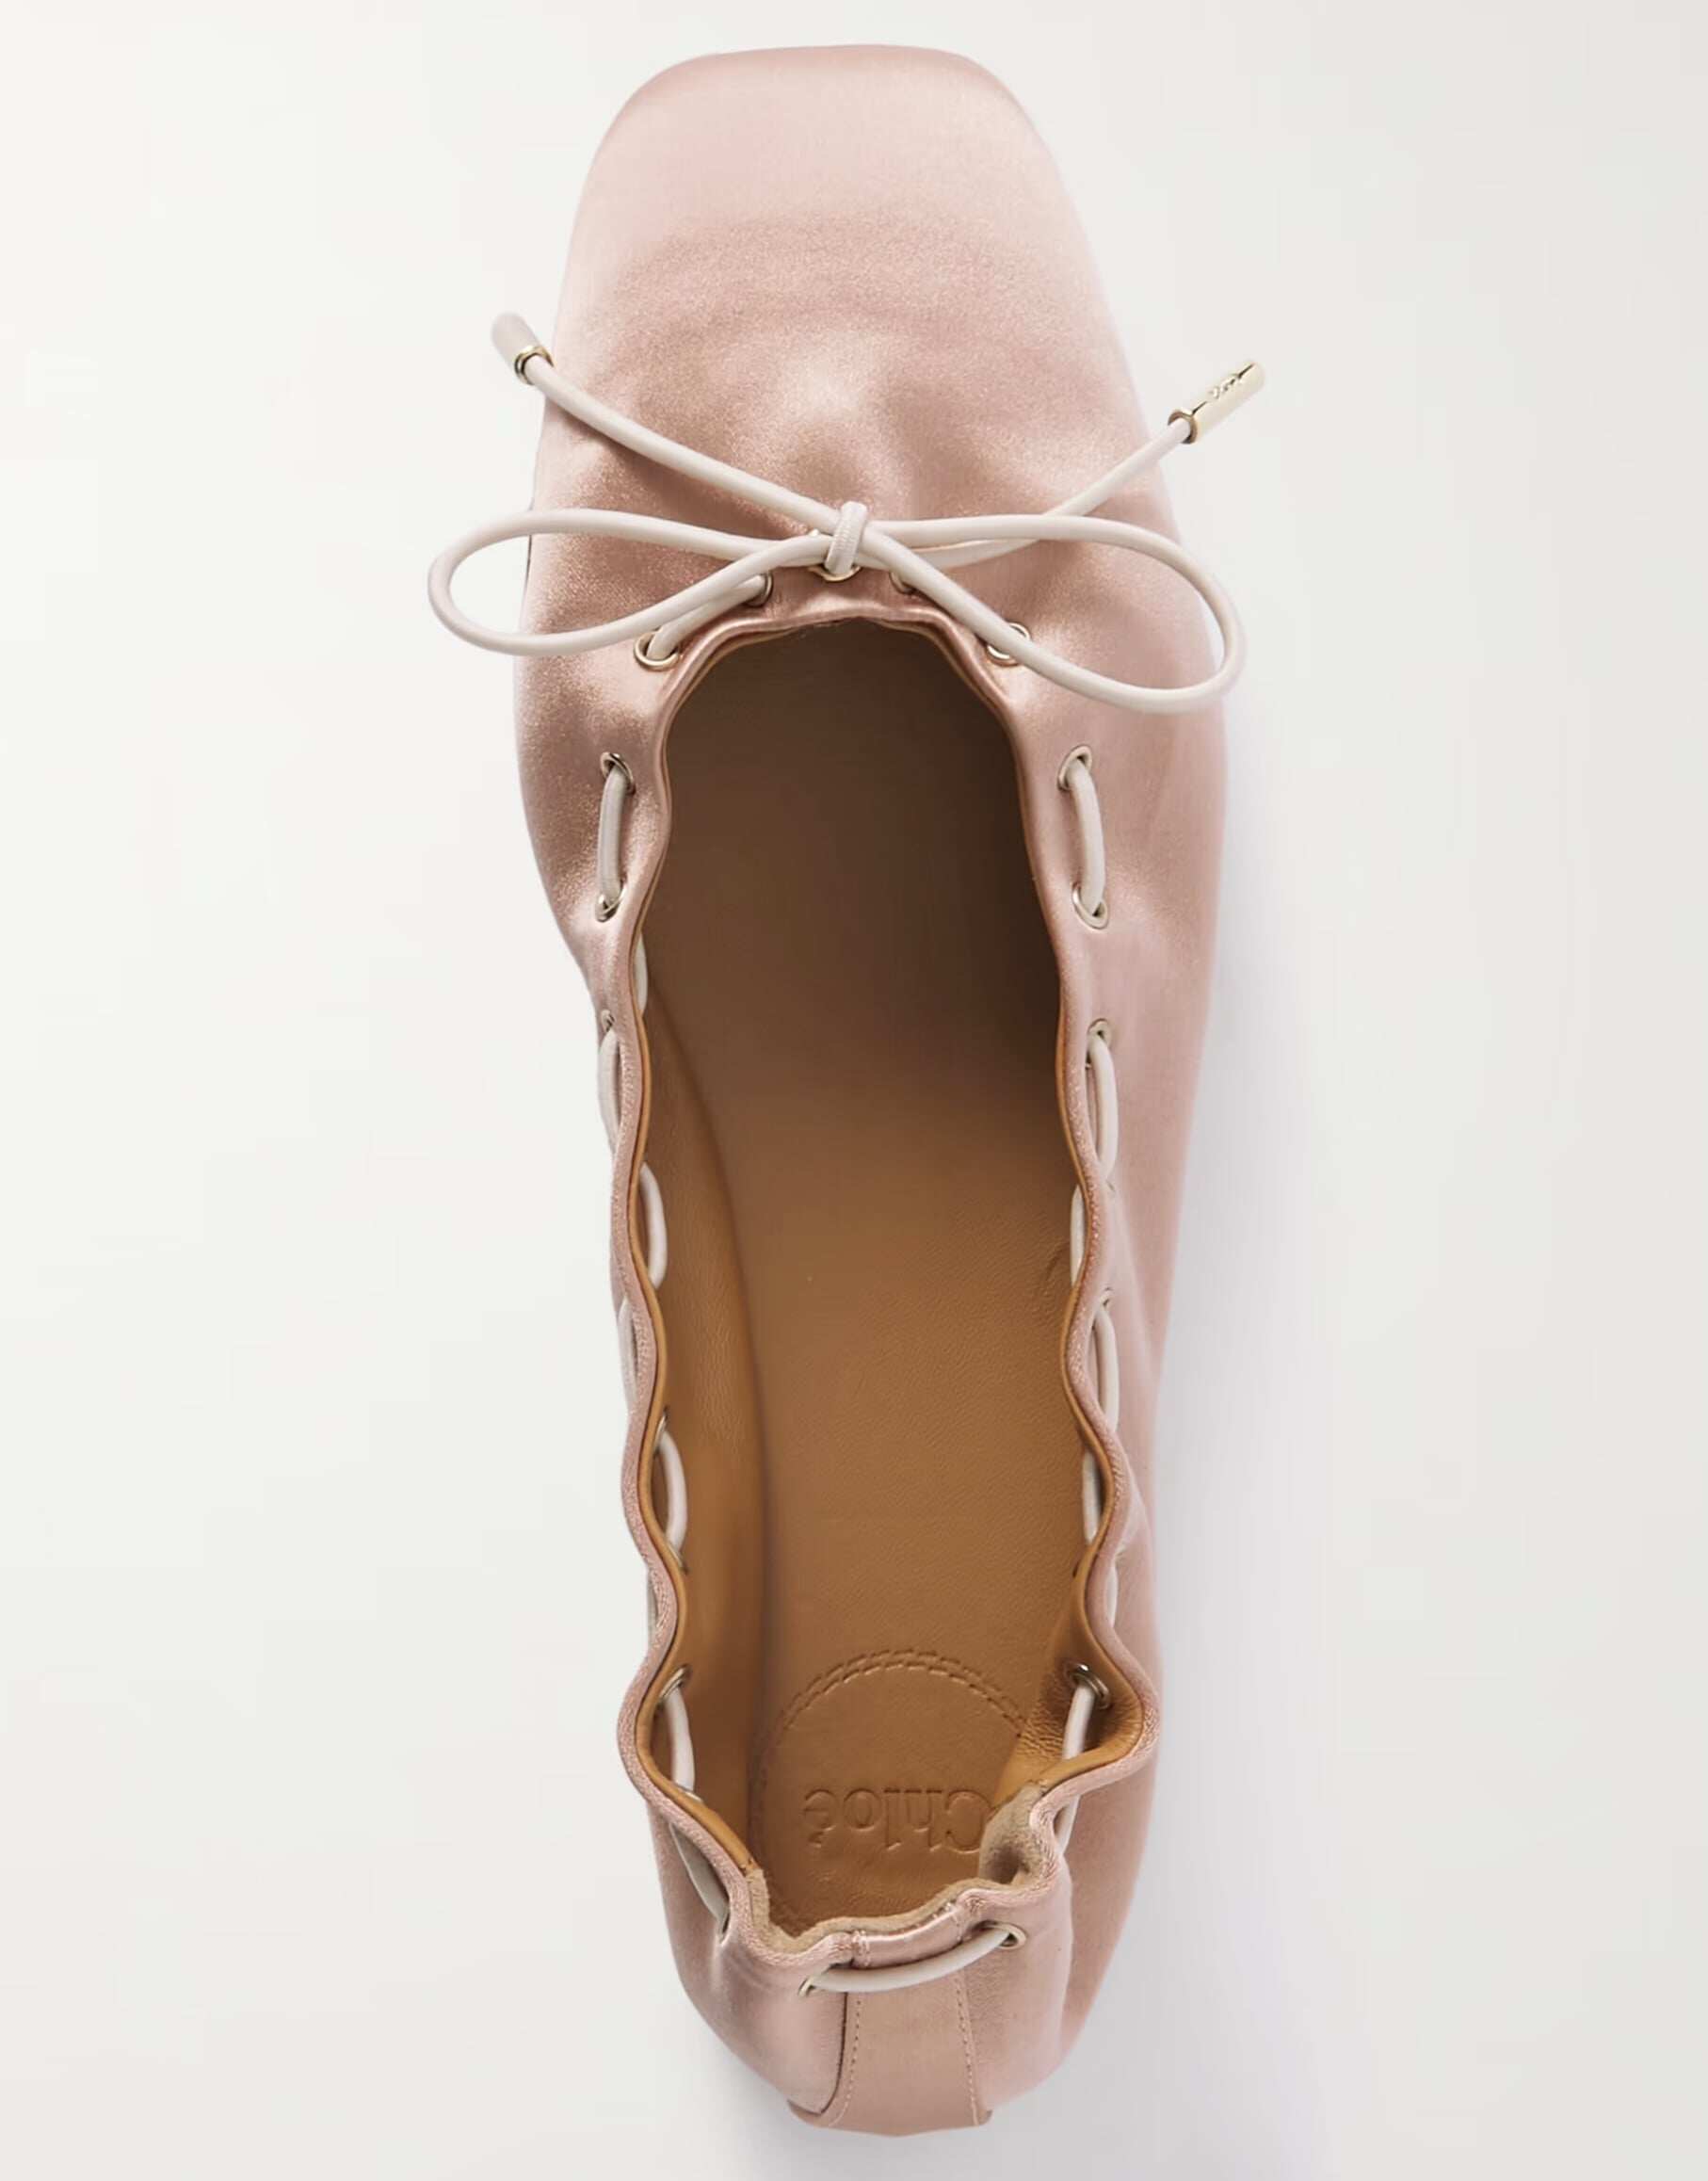 Oracia 粉紅色緞面蝴蝶結芭蕾平底鞋